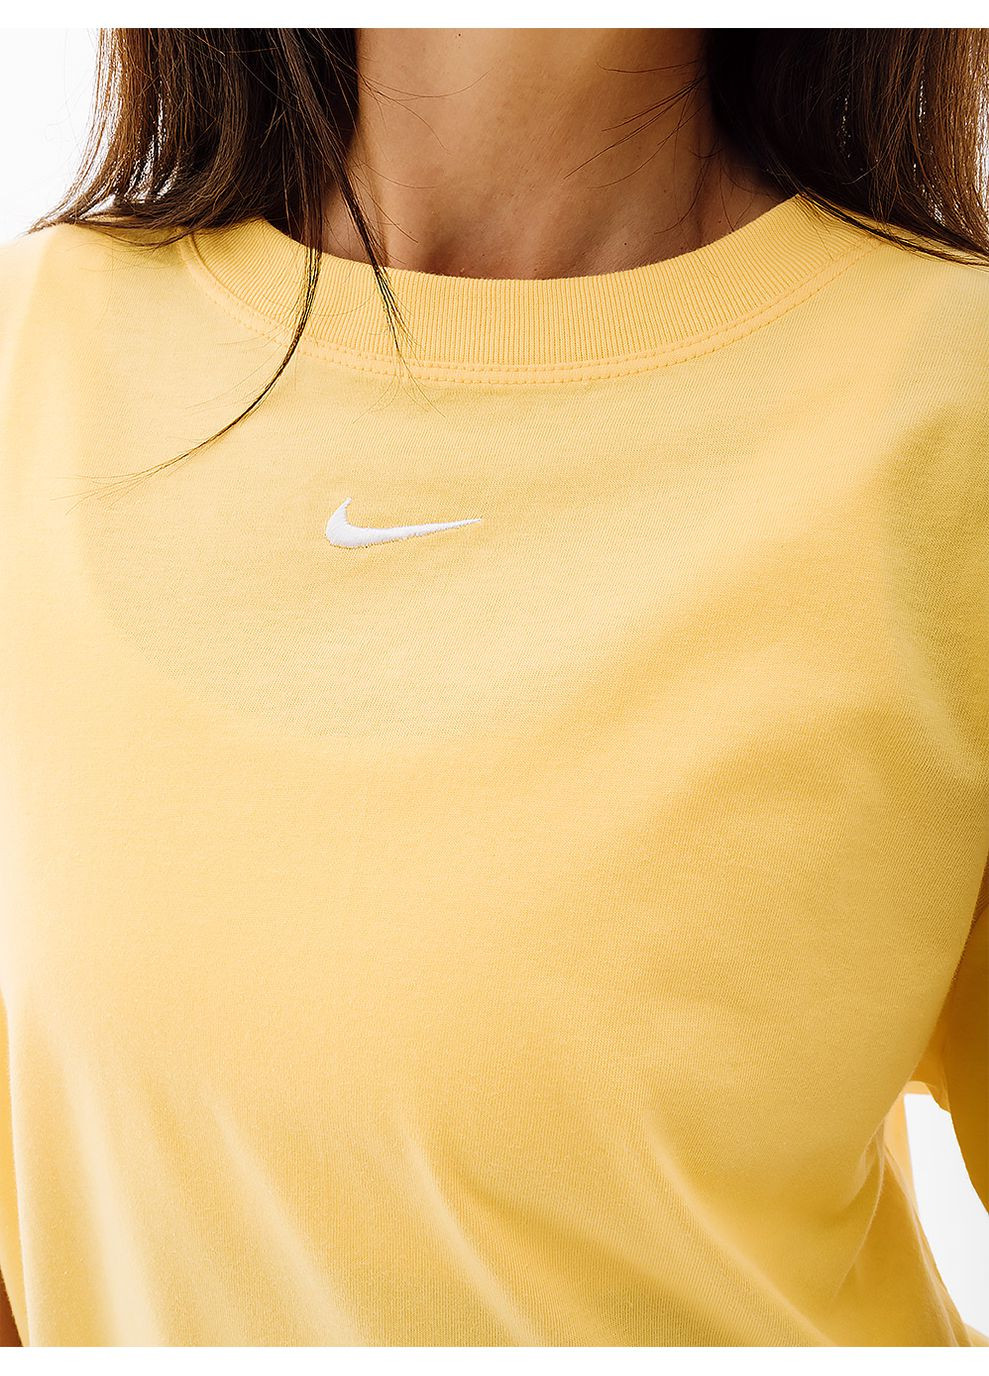 Жовта літня жіноча футболка w nsw essntl tee bf lbr жовтий Nike